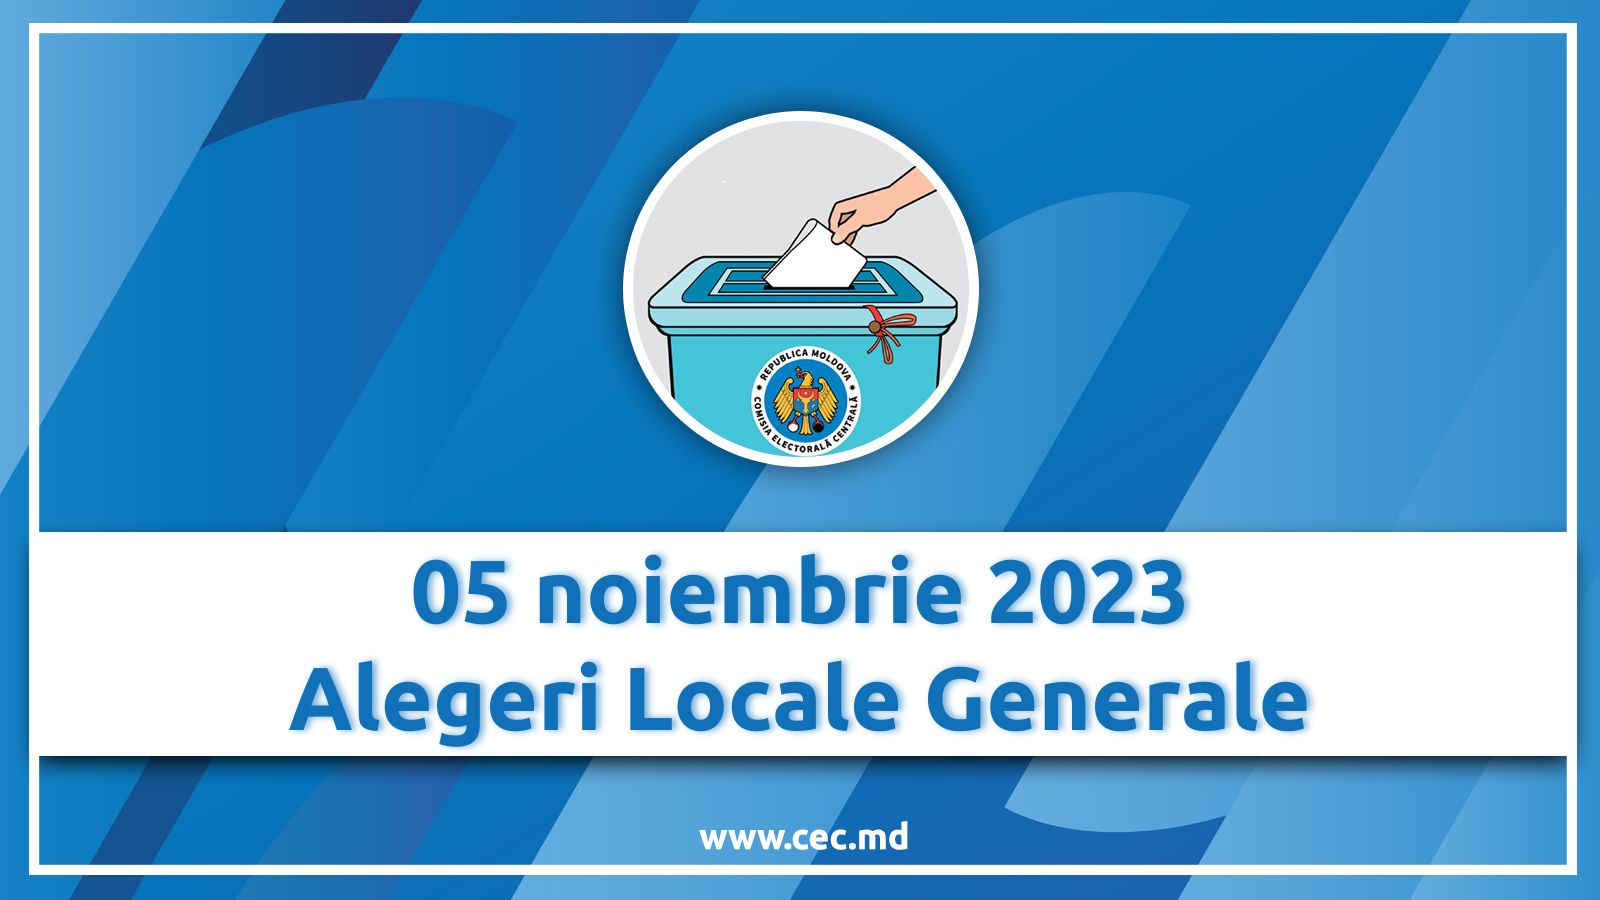 Peste 1500 de observatori vor supraveghea alegerile locale generale, care se vor desfășura duminică, 5 noiembrie